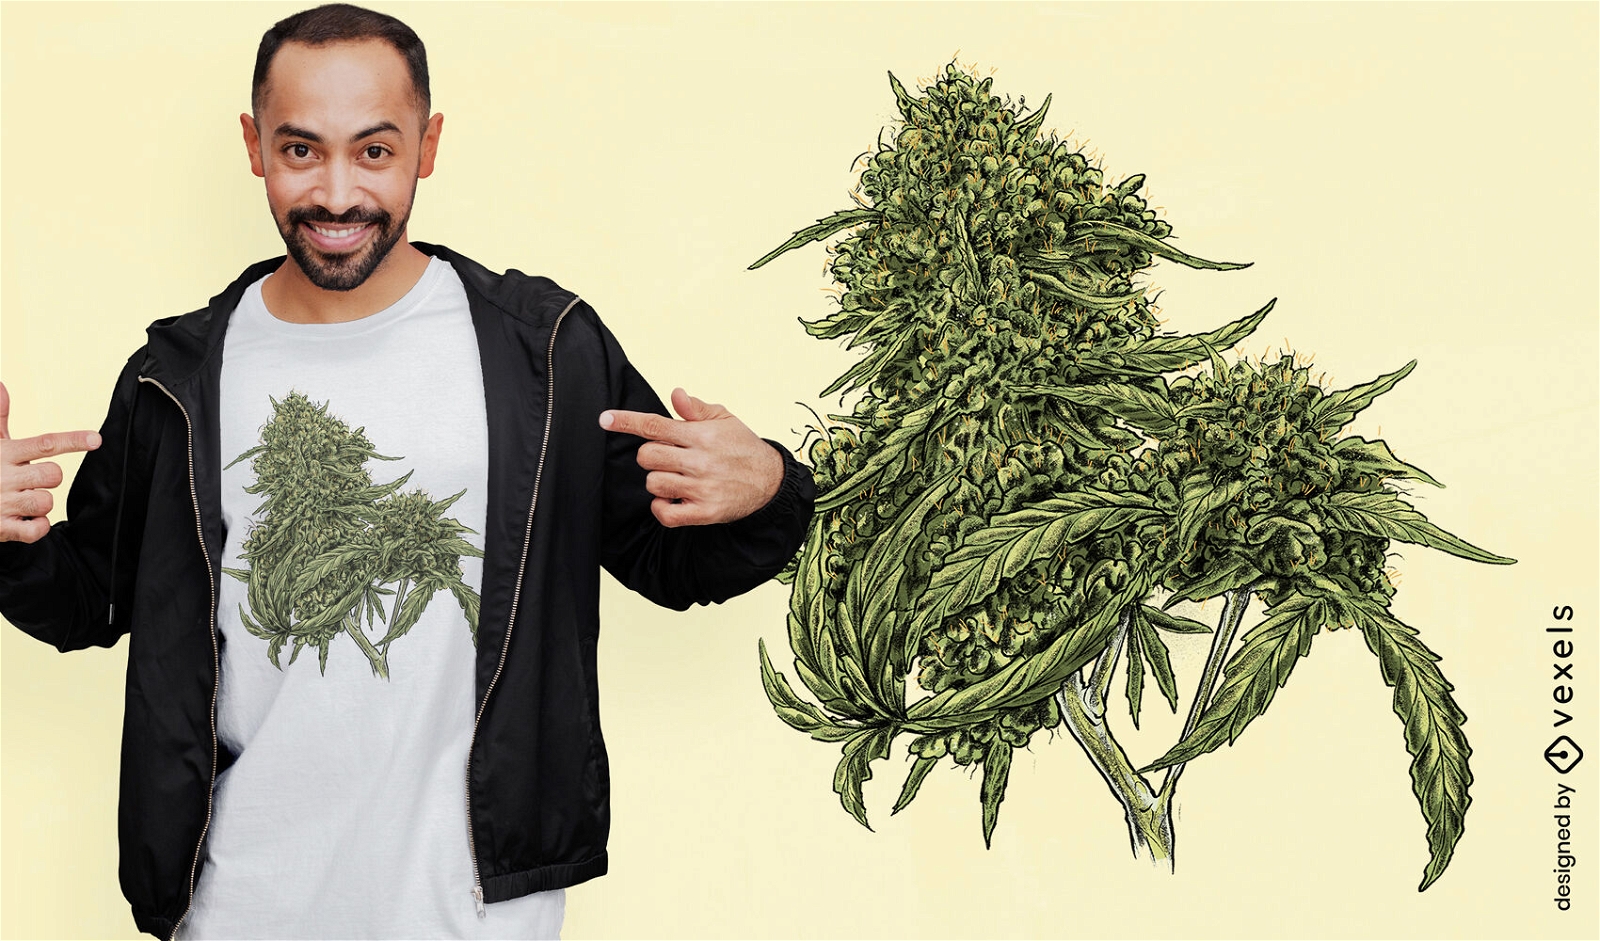 Dise?o de camiseta de planta de pud de cannabis.